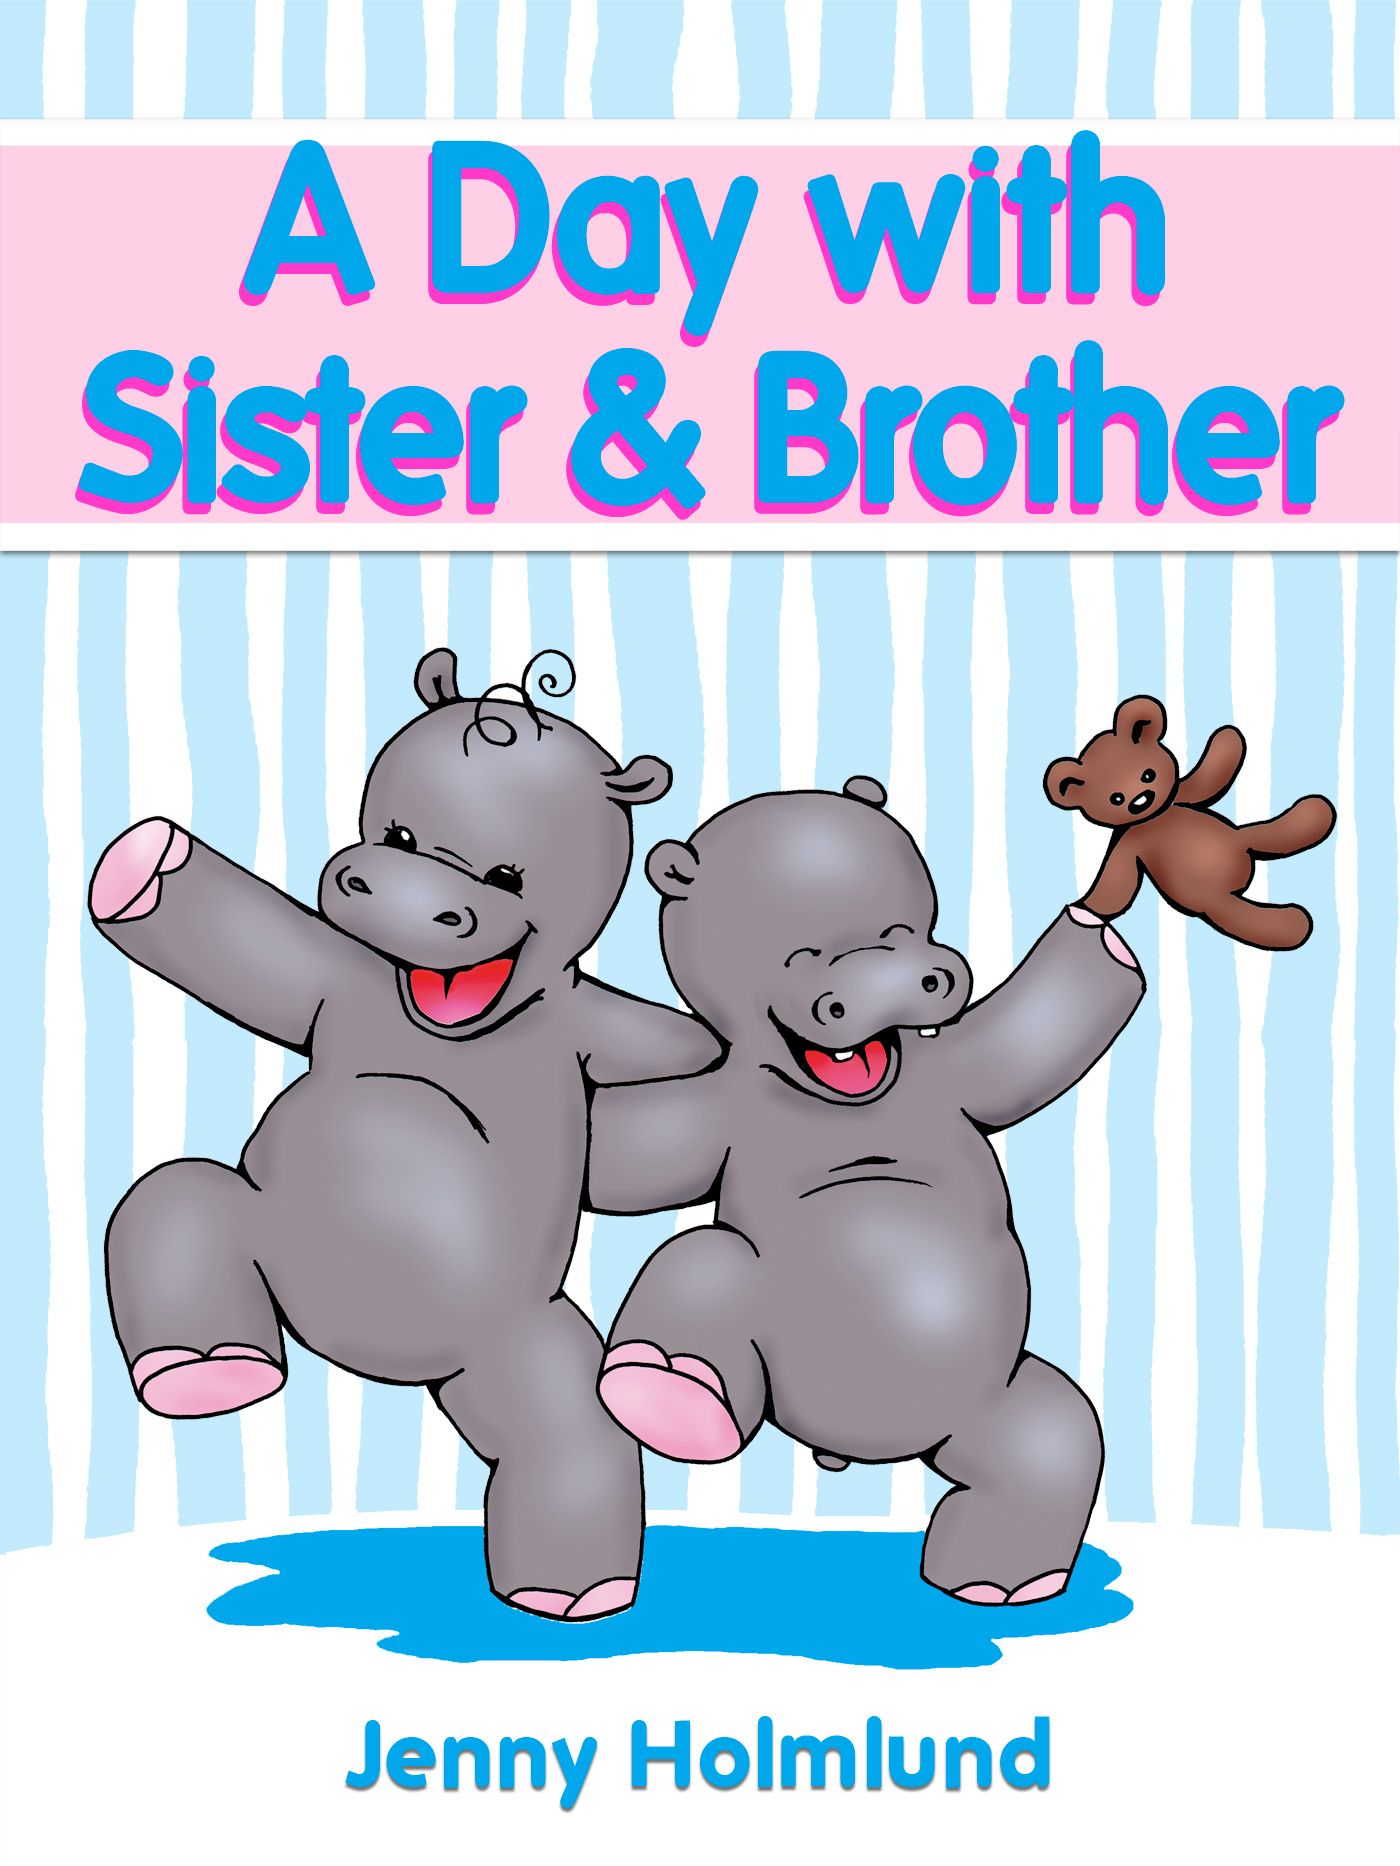 A Day with Sister & Brother, e-bog af Jenny Holmlund